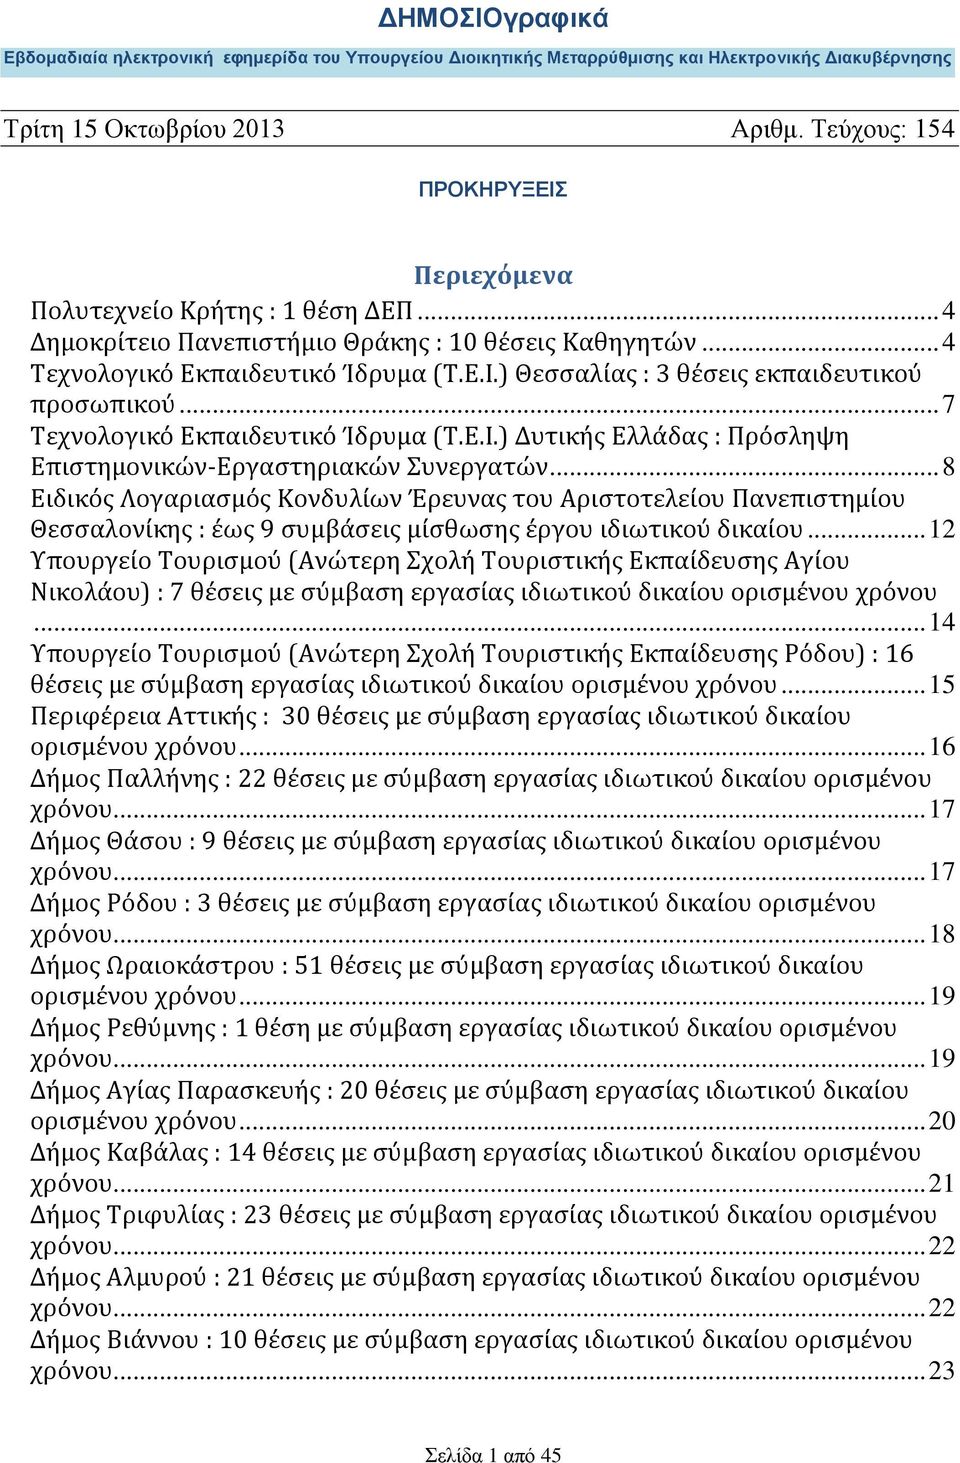 .. 8 Ειδικός Λογαριασμός Κονδυλίων Έρευνας του Αριστοτελείου Πανεπιστημίου Θεσσαλονίκης : έως 9 συμβάσεις μίσθωσης έργου ιδιωτικού δικαίου.